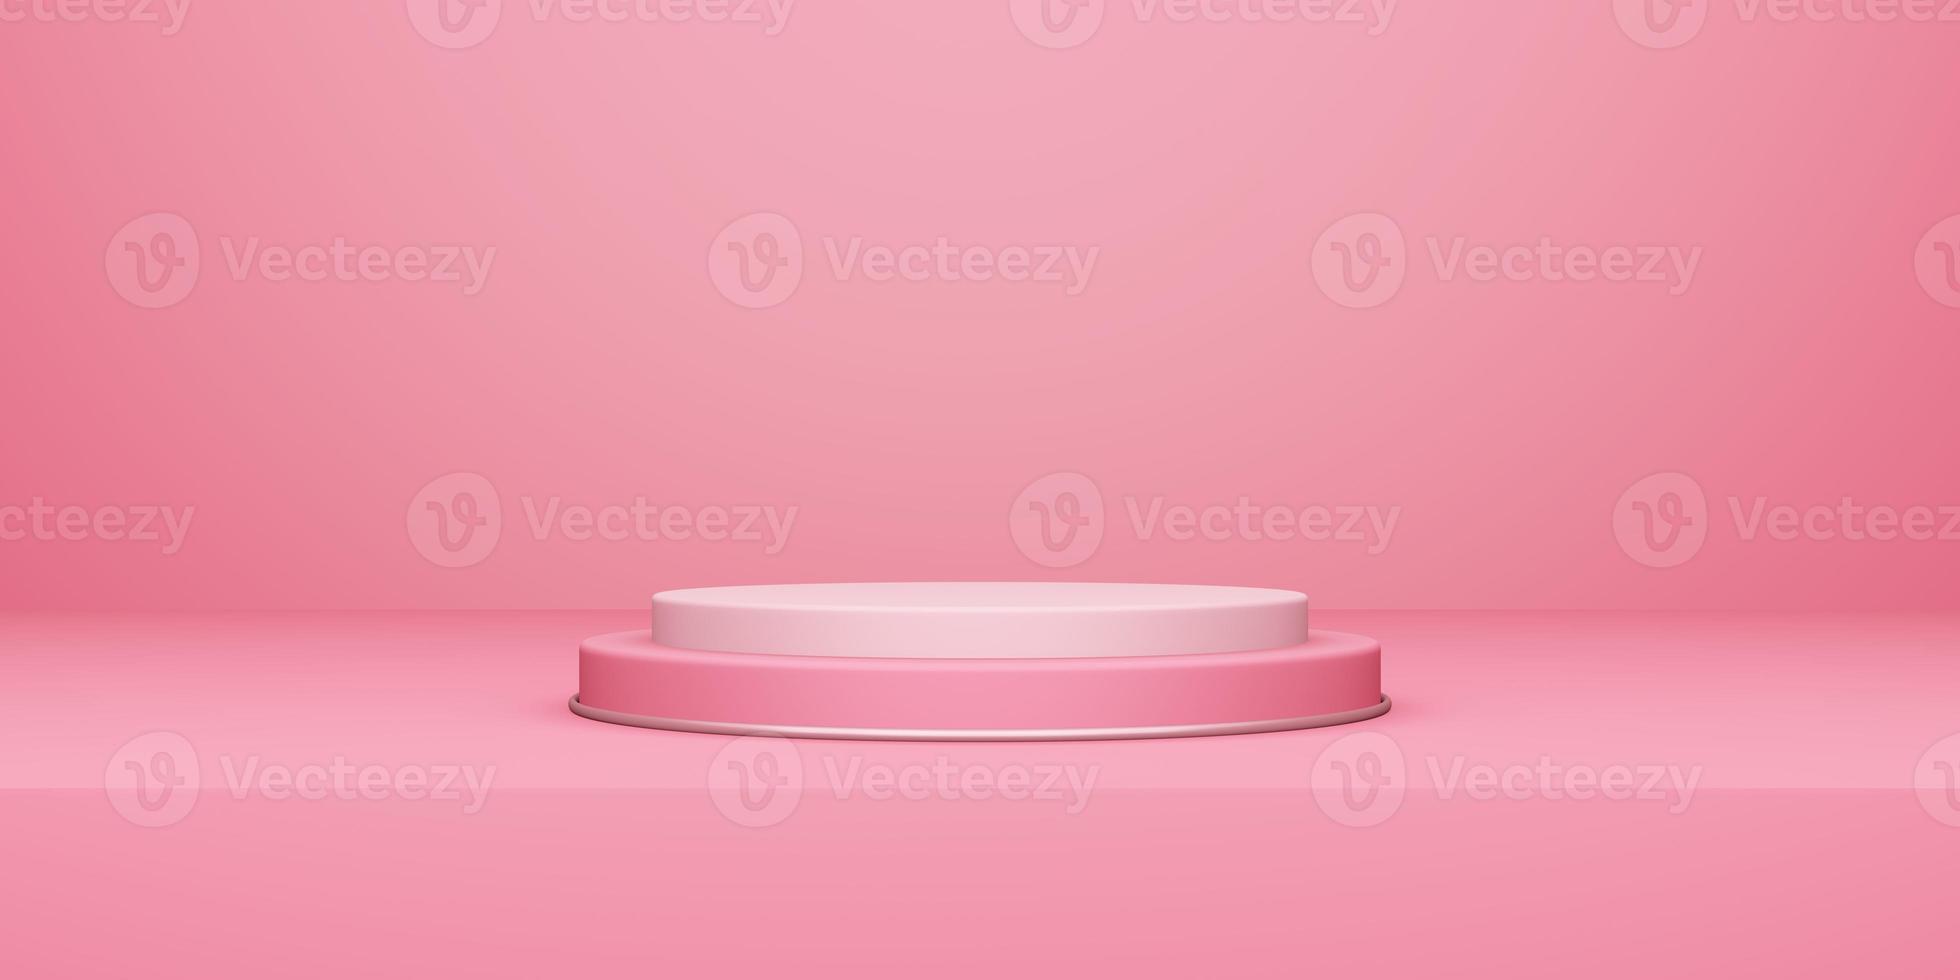 san valentino, podio rotondo o piedistallo con sala studio vuota rosa, sfondo del prodotto, mockup per display d'amore foto